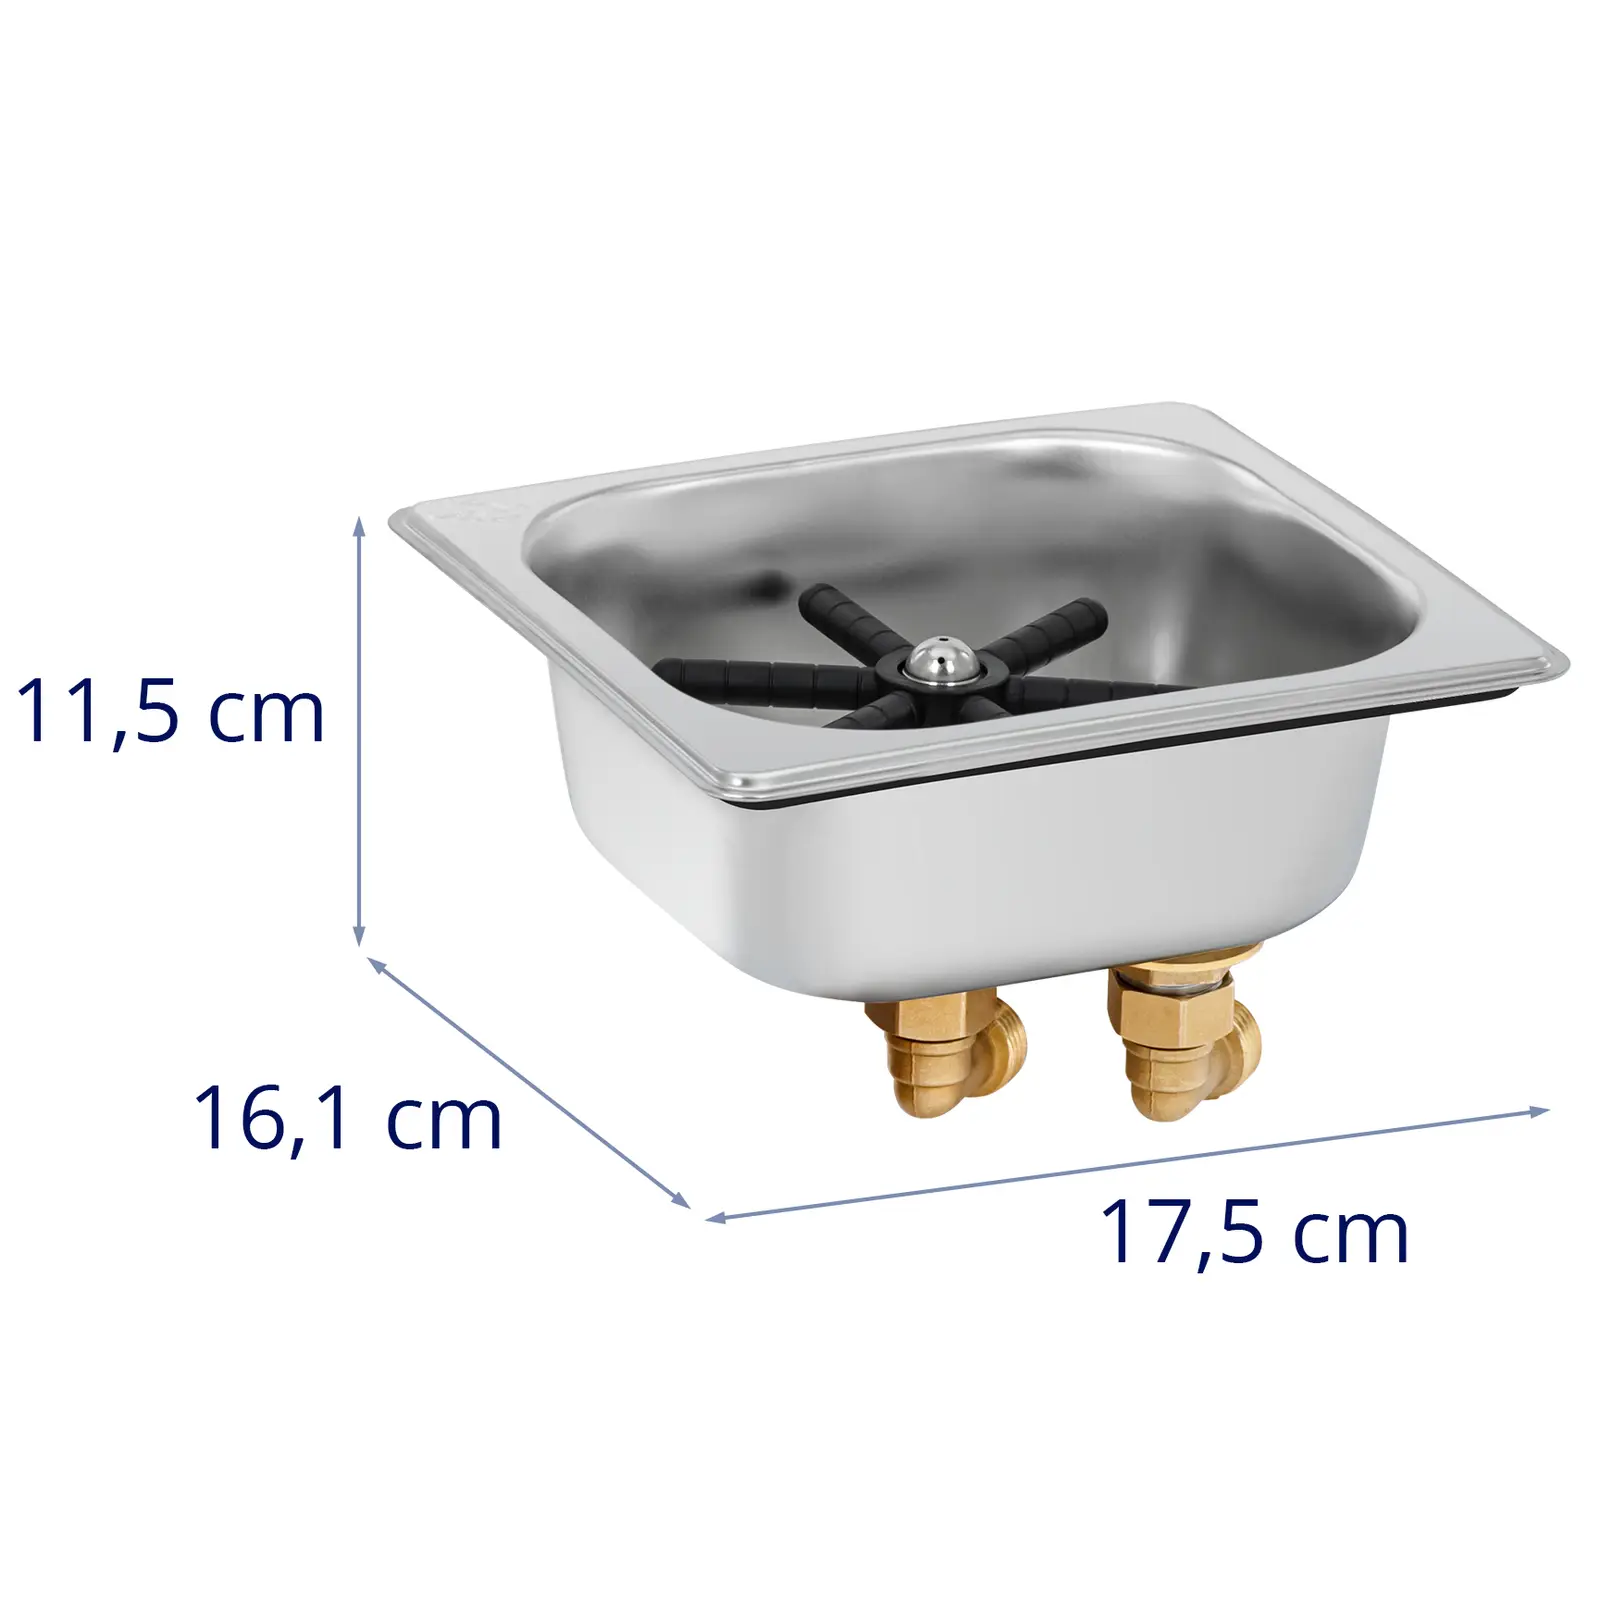 Enxaguador de copos - com lavatório - aço inoxidável / PA - Royal Catering